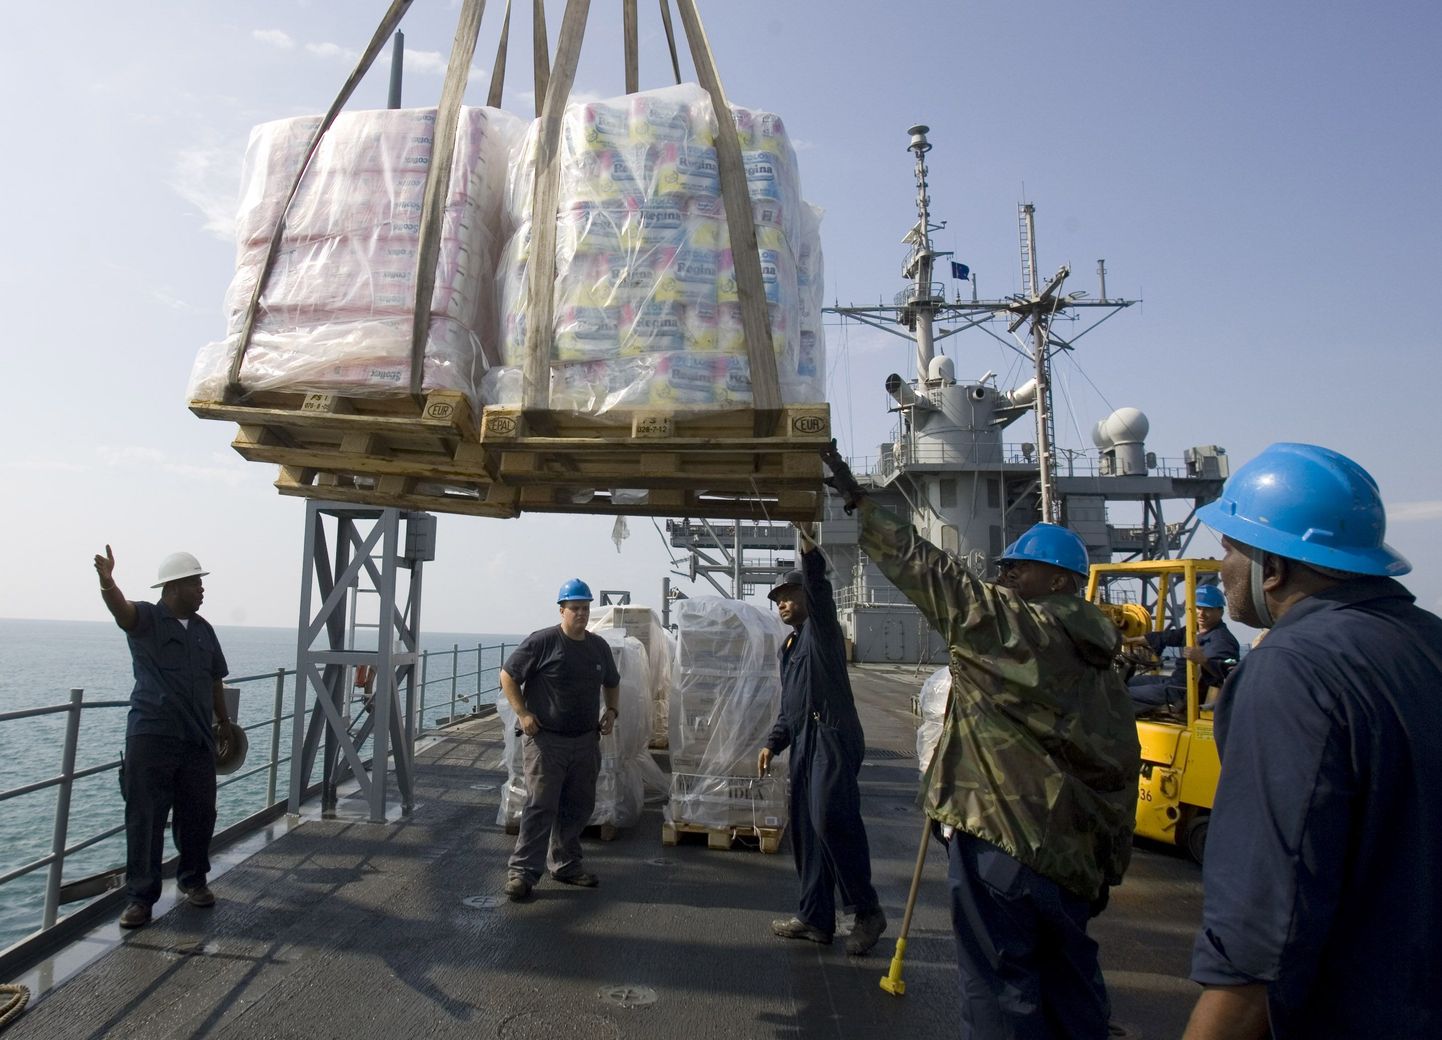 Ühendriikide sõjalaevalt USS Mount Whitney tõstetakse maha humanitaarabipakke. Pilt on tehtud Photi sadama juures täna.